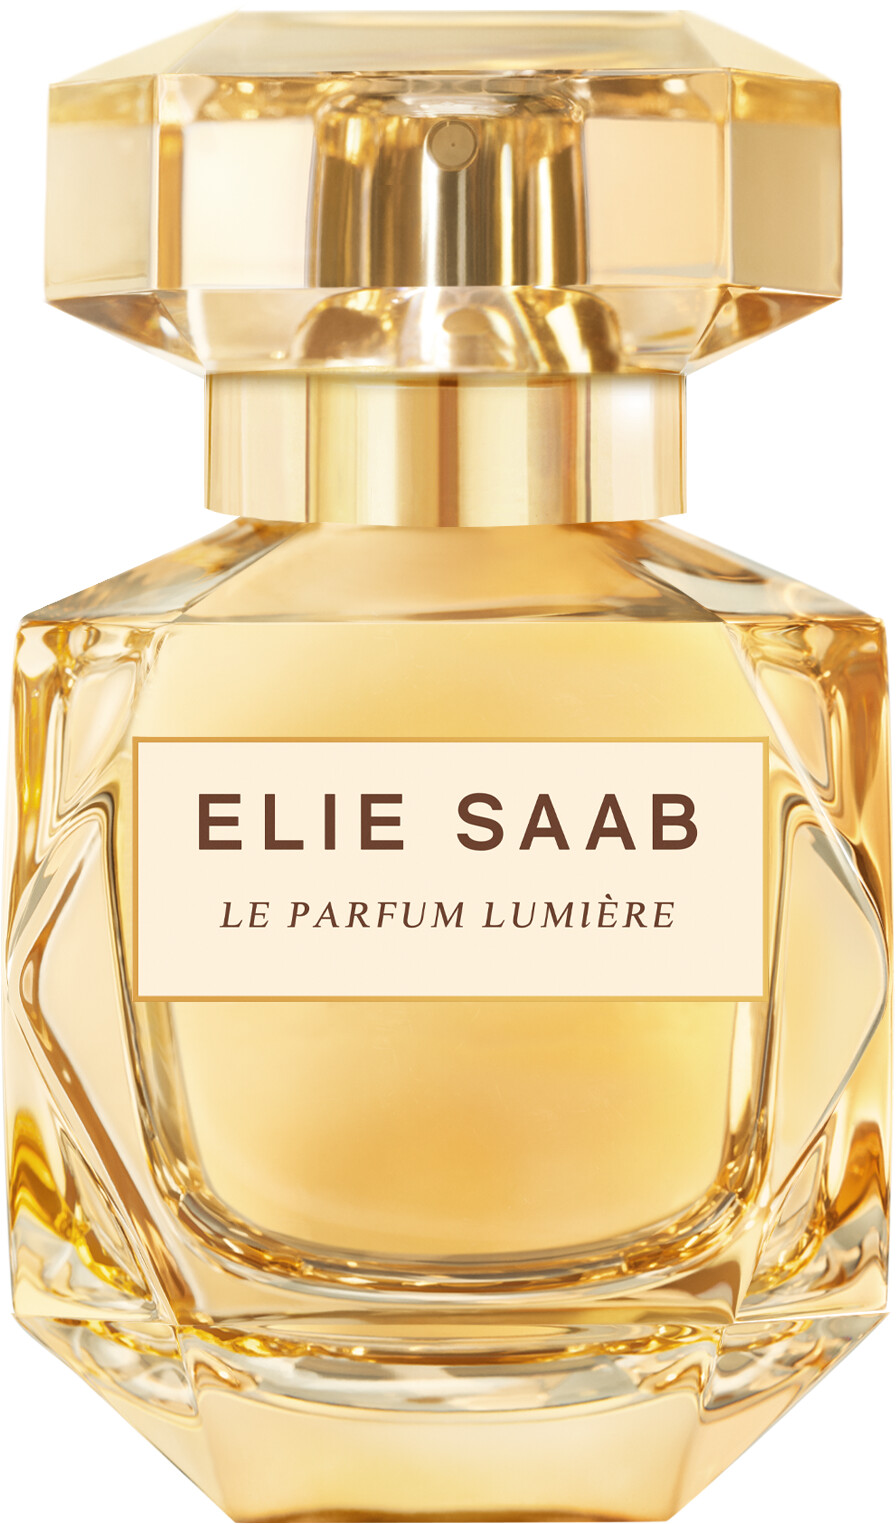 Elie Saab Le Parfum Lumiere Eau de Parfum Spray 30ml